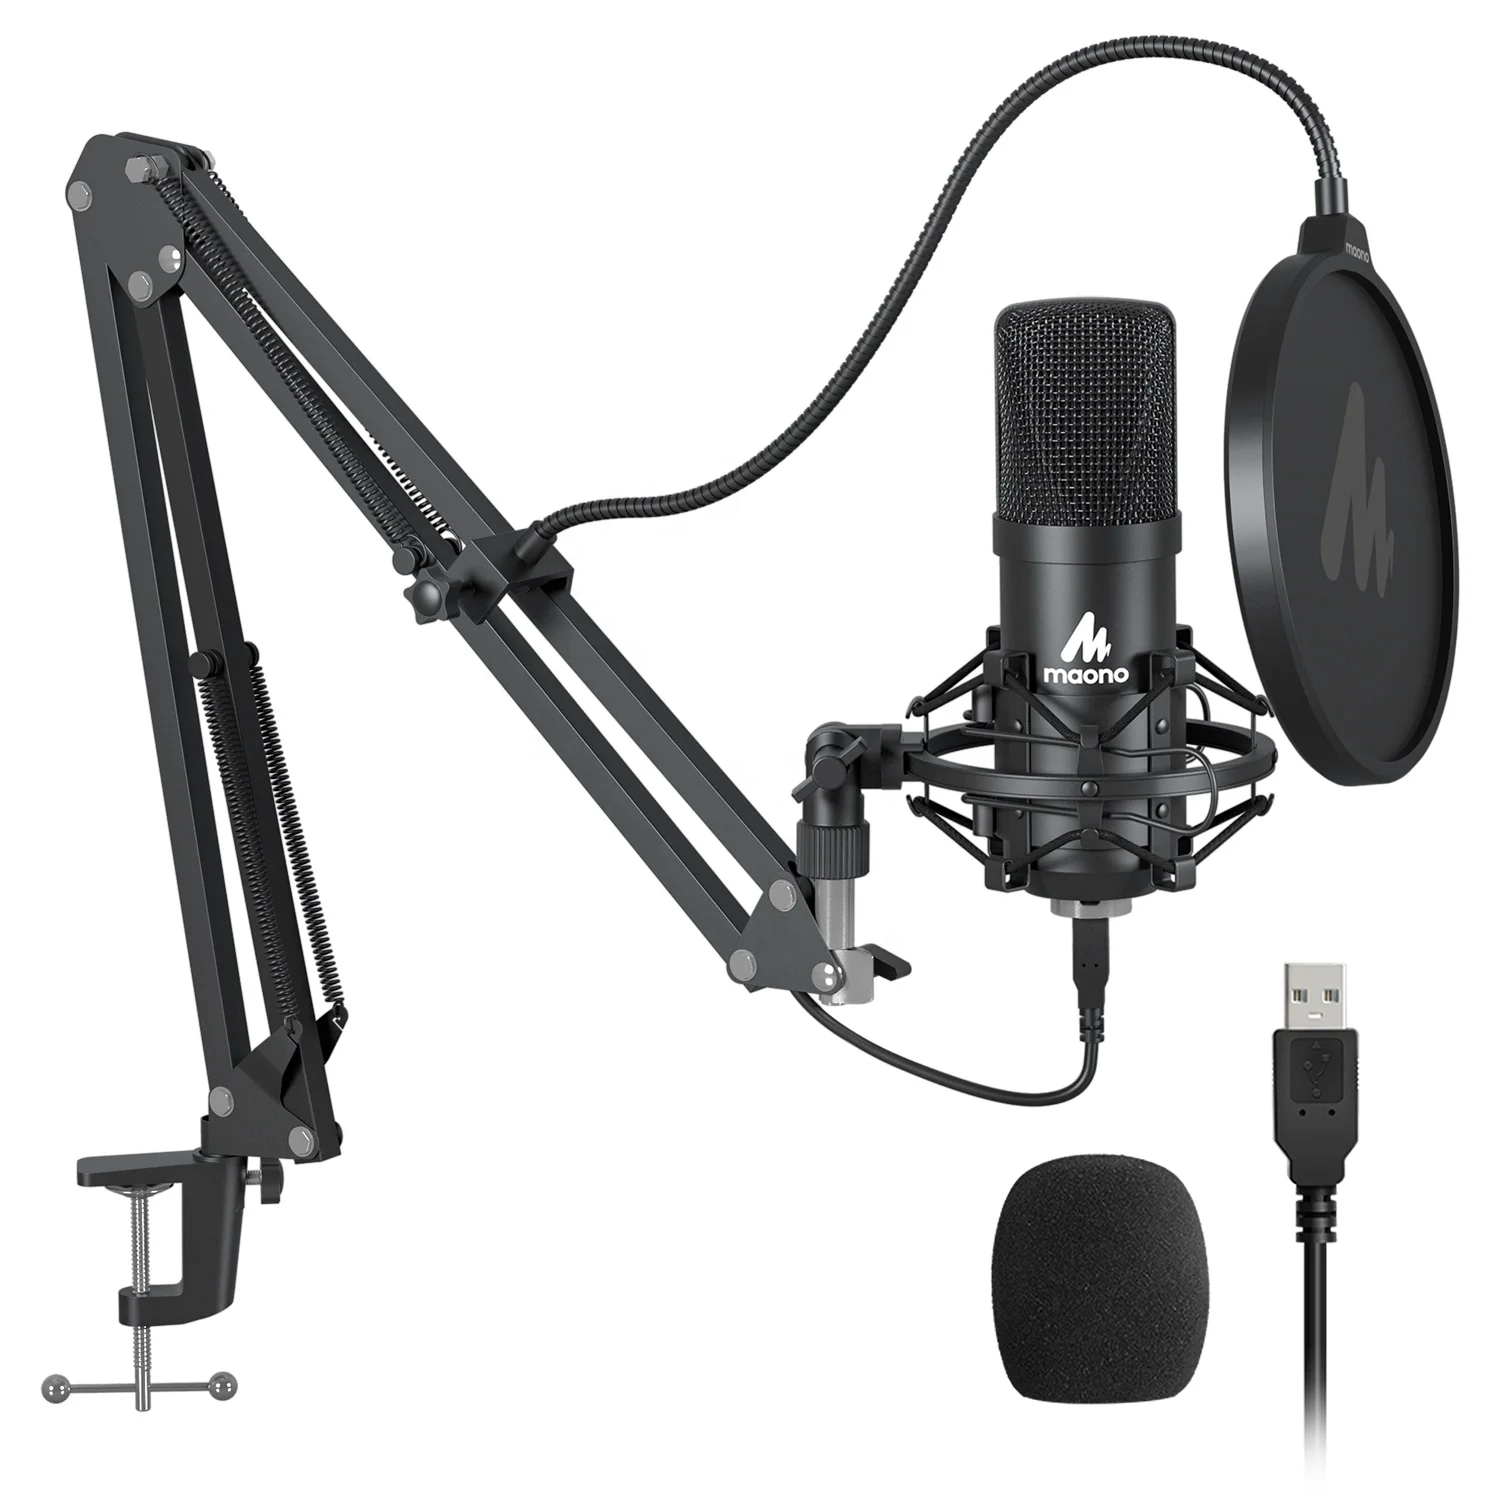 

Maono Electret Bm 800 USB Wired Recording Studio Condenser Microphone, Black, silver